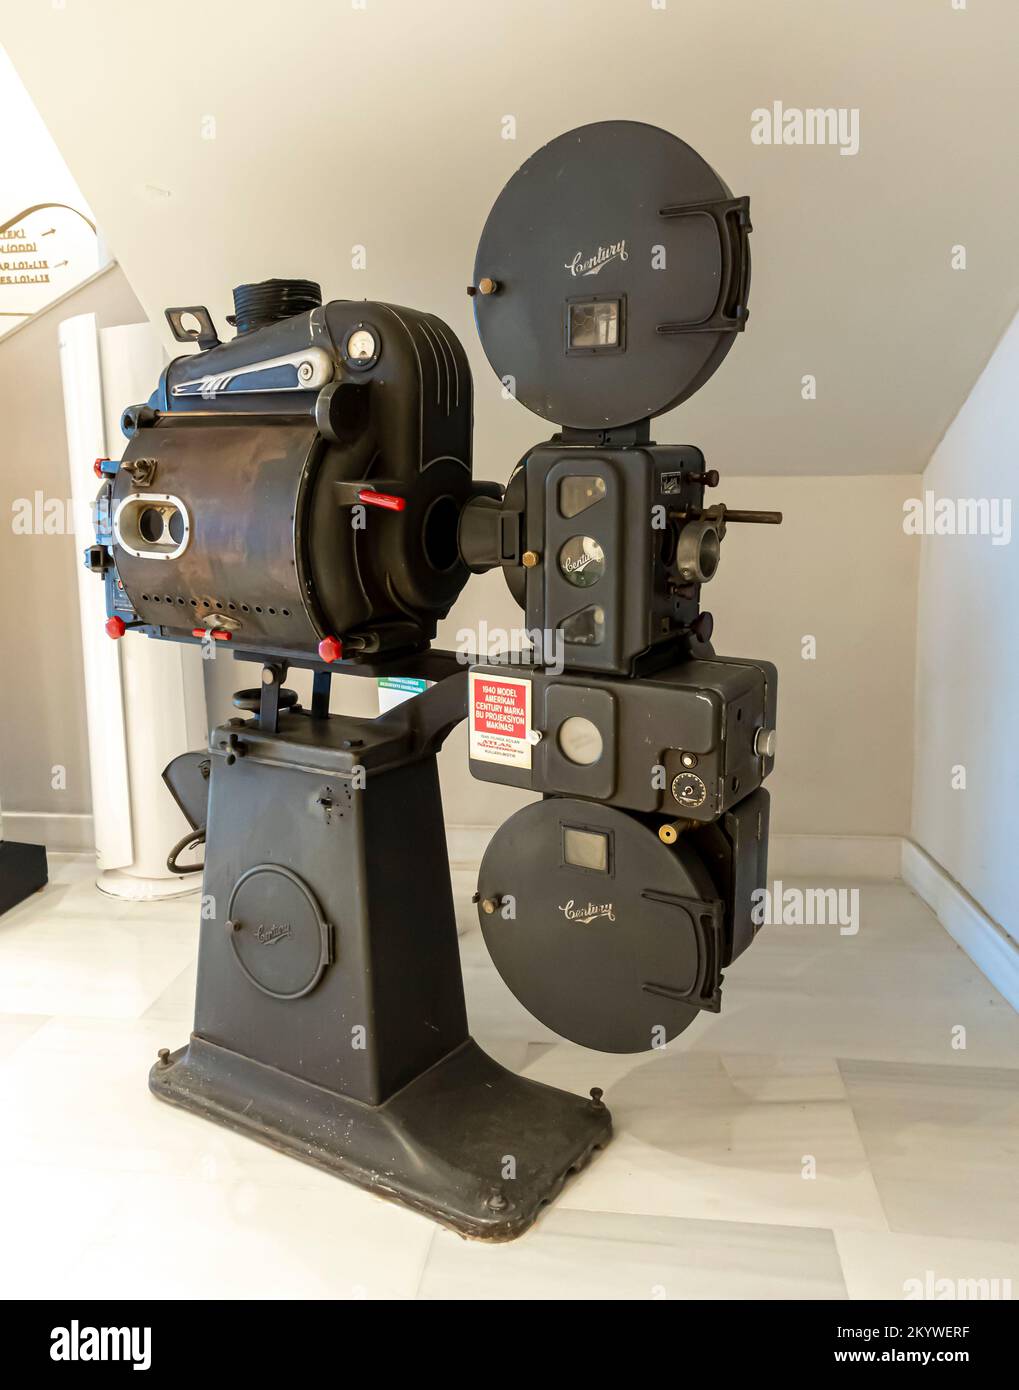 Proiettore da 35 mm immagini e fotografie stock ad alta risoluzione - Alamy